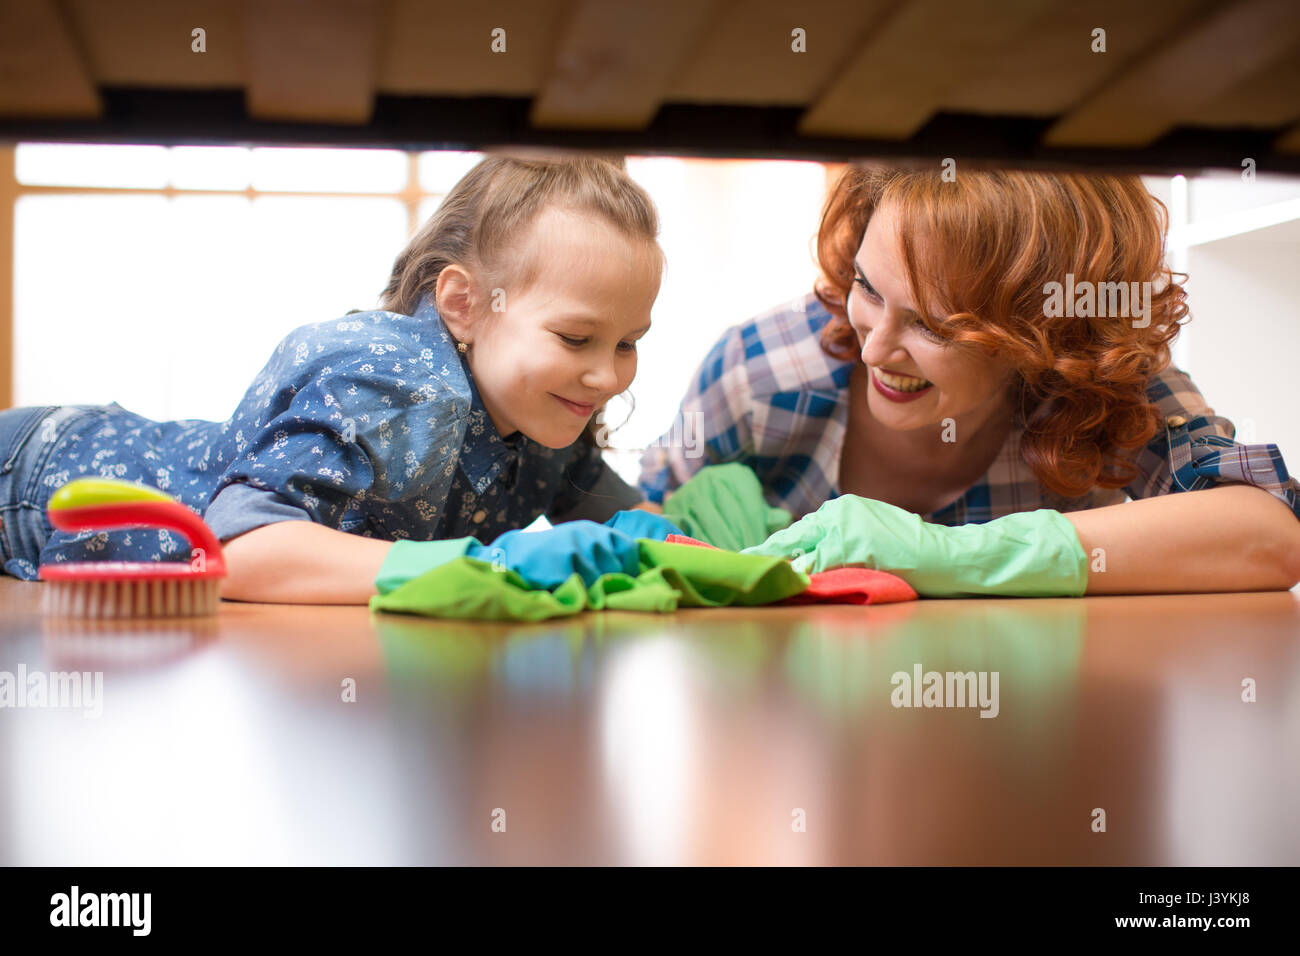 Famiglia sorridente madre e bambino ragazza camera pulita a casa. L'età media di donna e bambino ragazza spazzato il pavimento sotto il letto Foto Stock